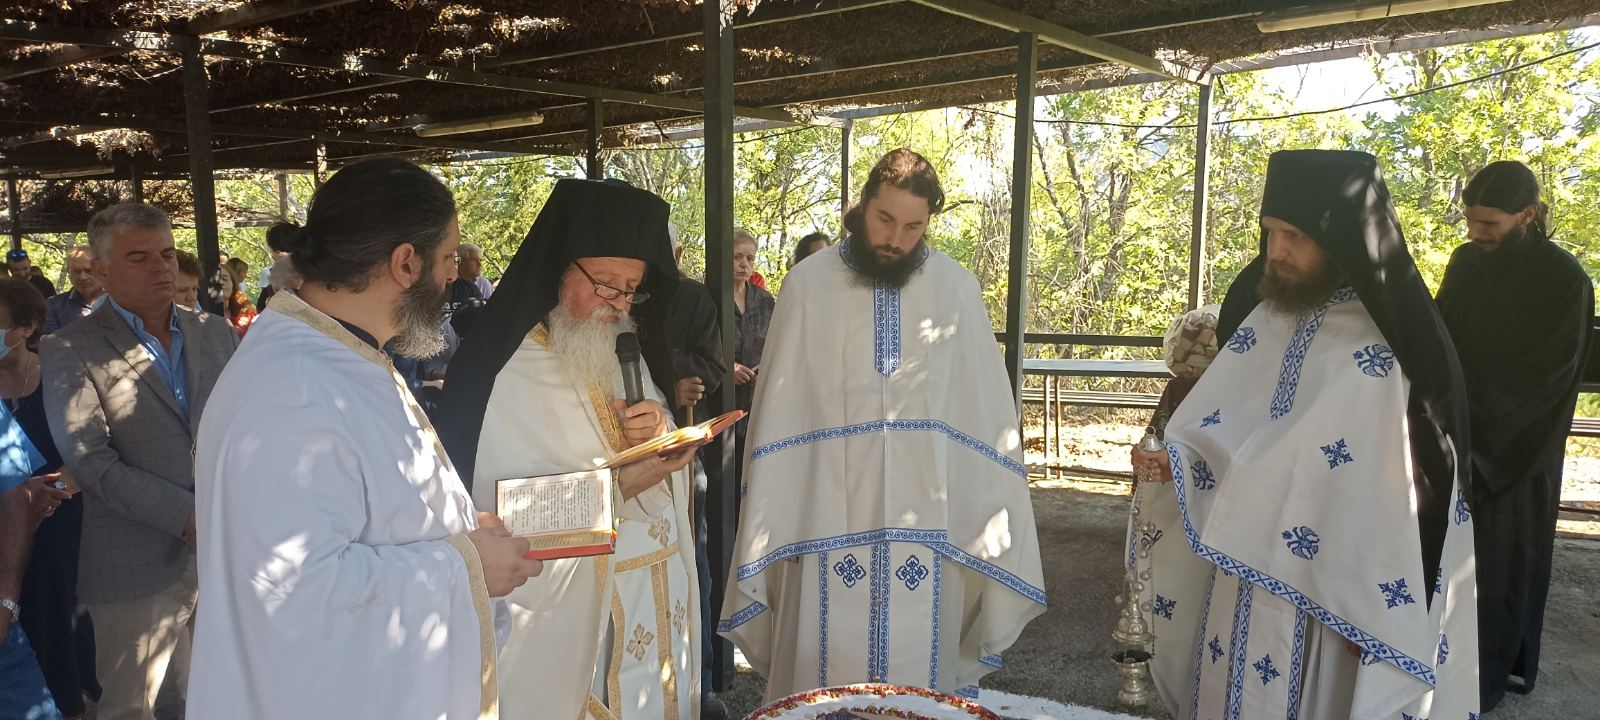 Λαμπρά πανηγύρισε φέτος η Ιερά Μονή Οσίου Νικάνορος της επαρχίας Κόνιτσας!